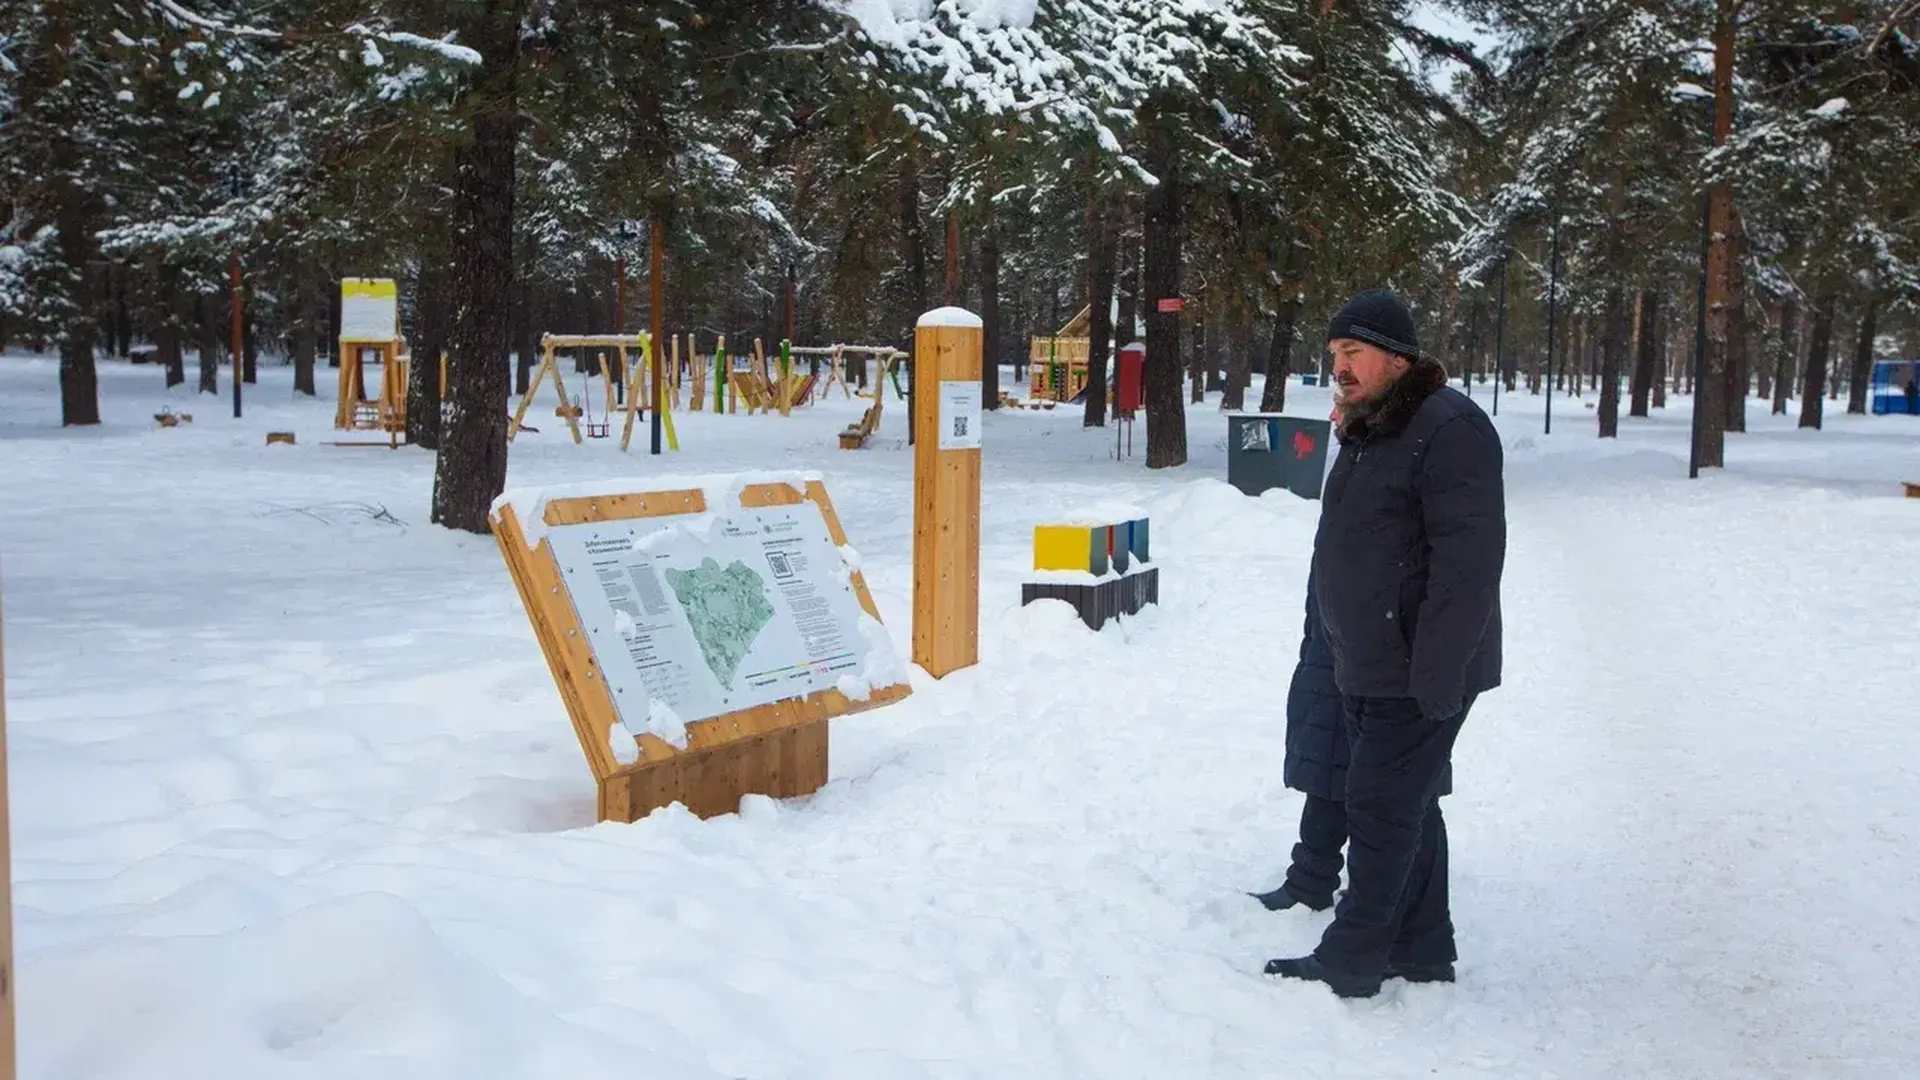 Зимний сезон откроют в Кузьминском лесопарке в Котельниках 1 декабря